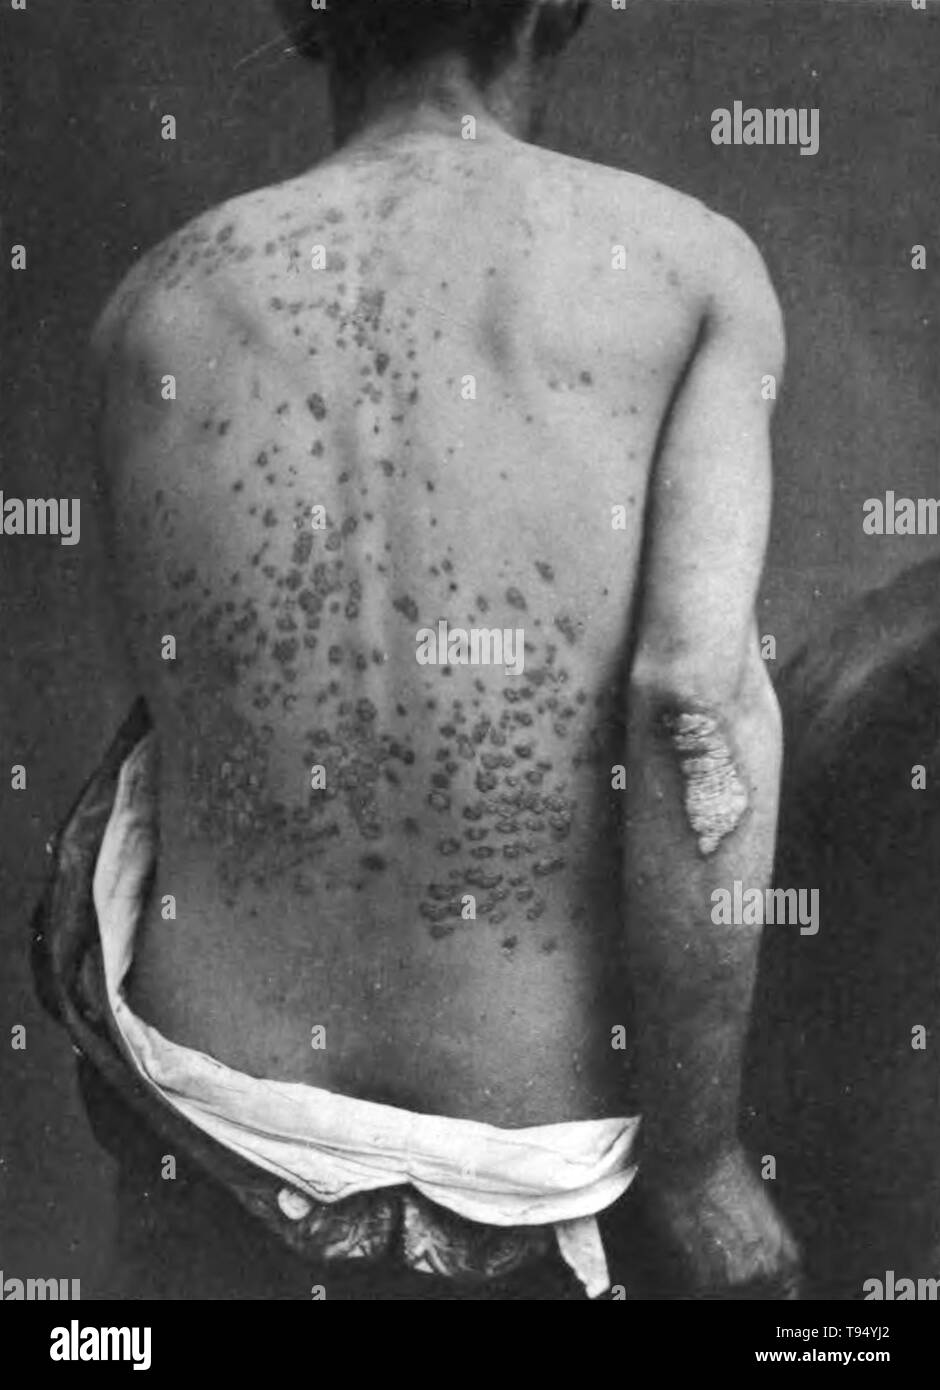 Este tipo de psoriasis en la espalda y en el brazo de un hombre. La psoriasis en gotas es un tipo de psoriasis que parece pequeño, salmón cae sobre la piel. La palabra guttata se deriva de la palabra latina gutta, en el sentido de descenso. Fotografiado por Henry George Fox, 1886). Foto de stock